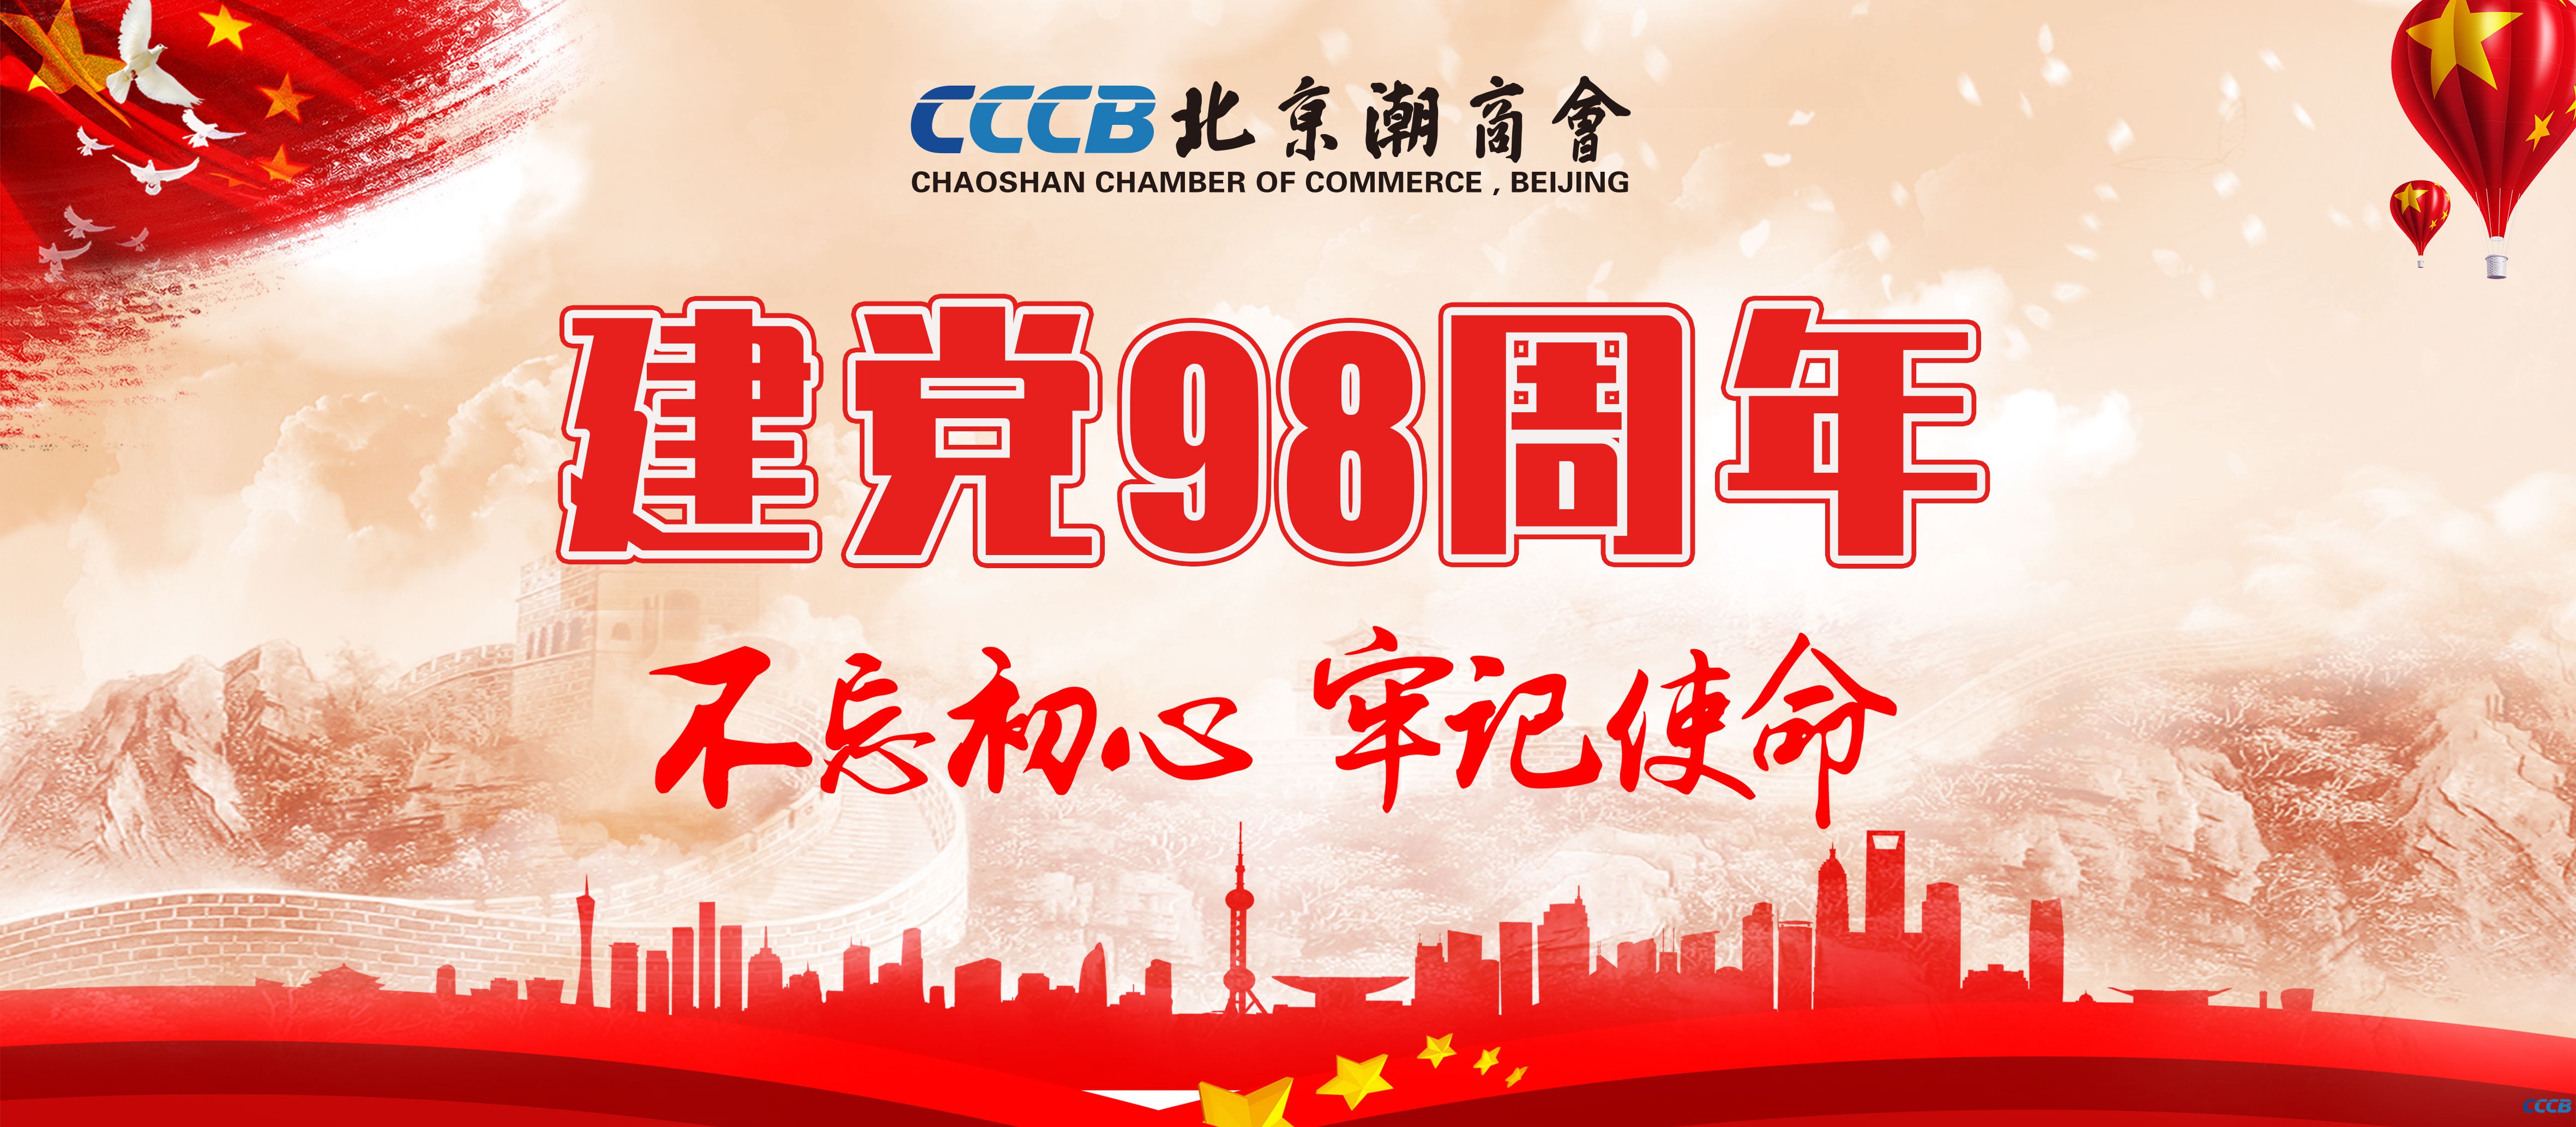 北京潮商会党支部、北京潮商会热烈庆祝中国共产党成立98周年